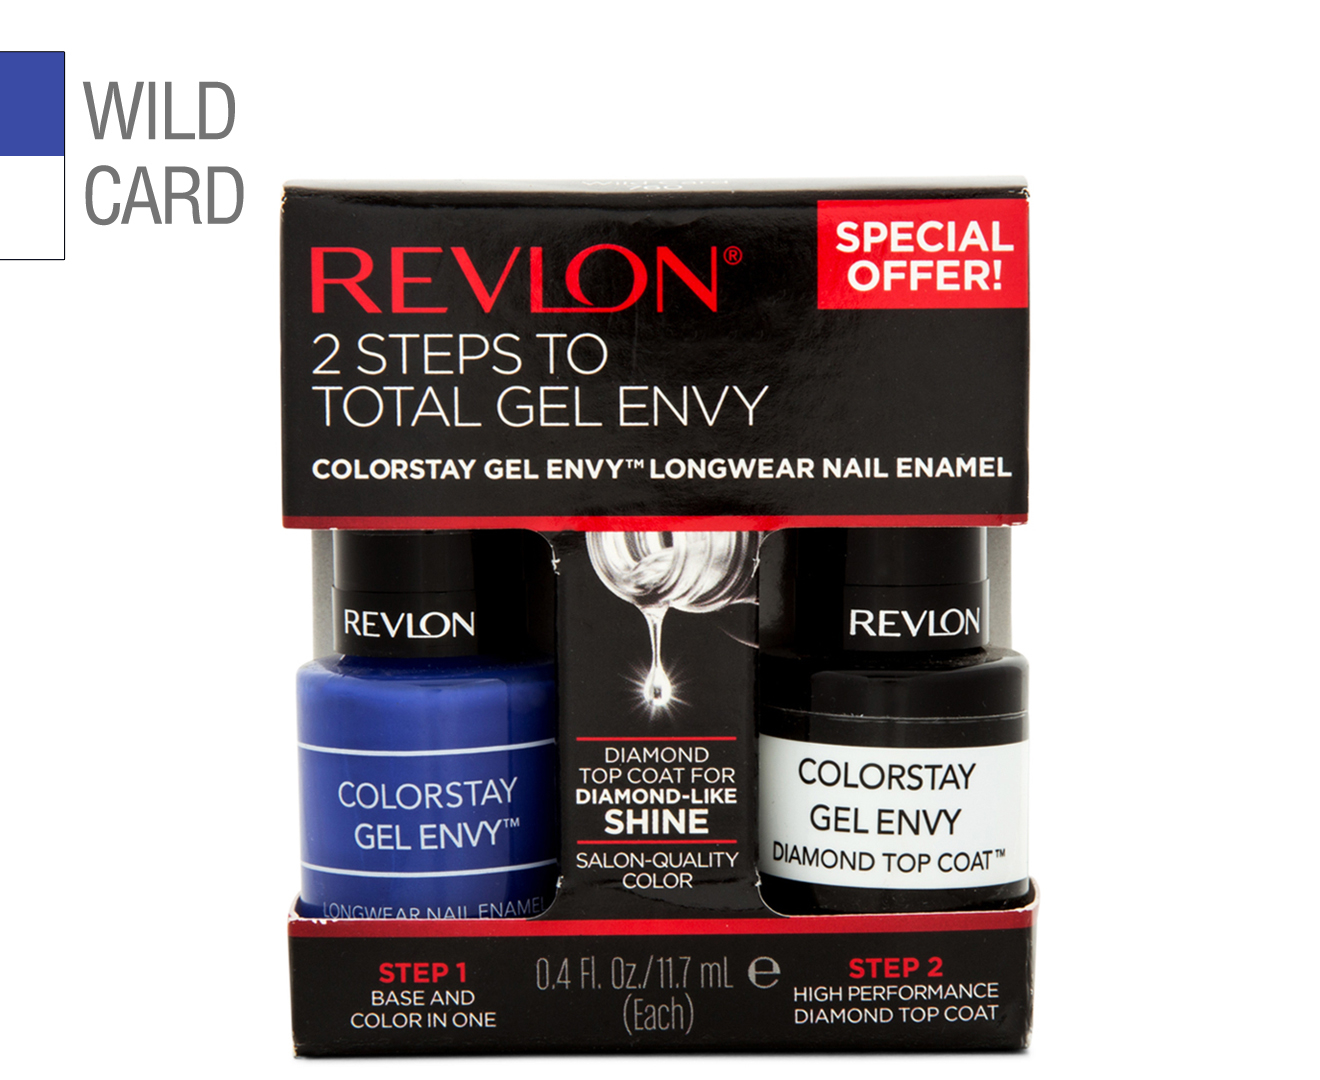 5. Revlon ColorStay Gel Envy in "Wild Card" - wide 2